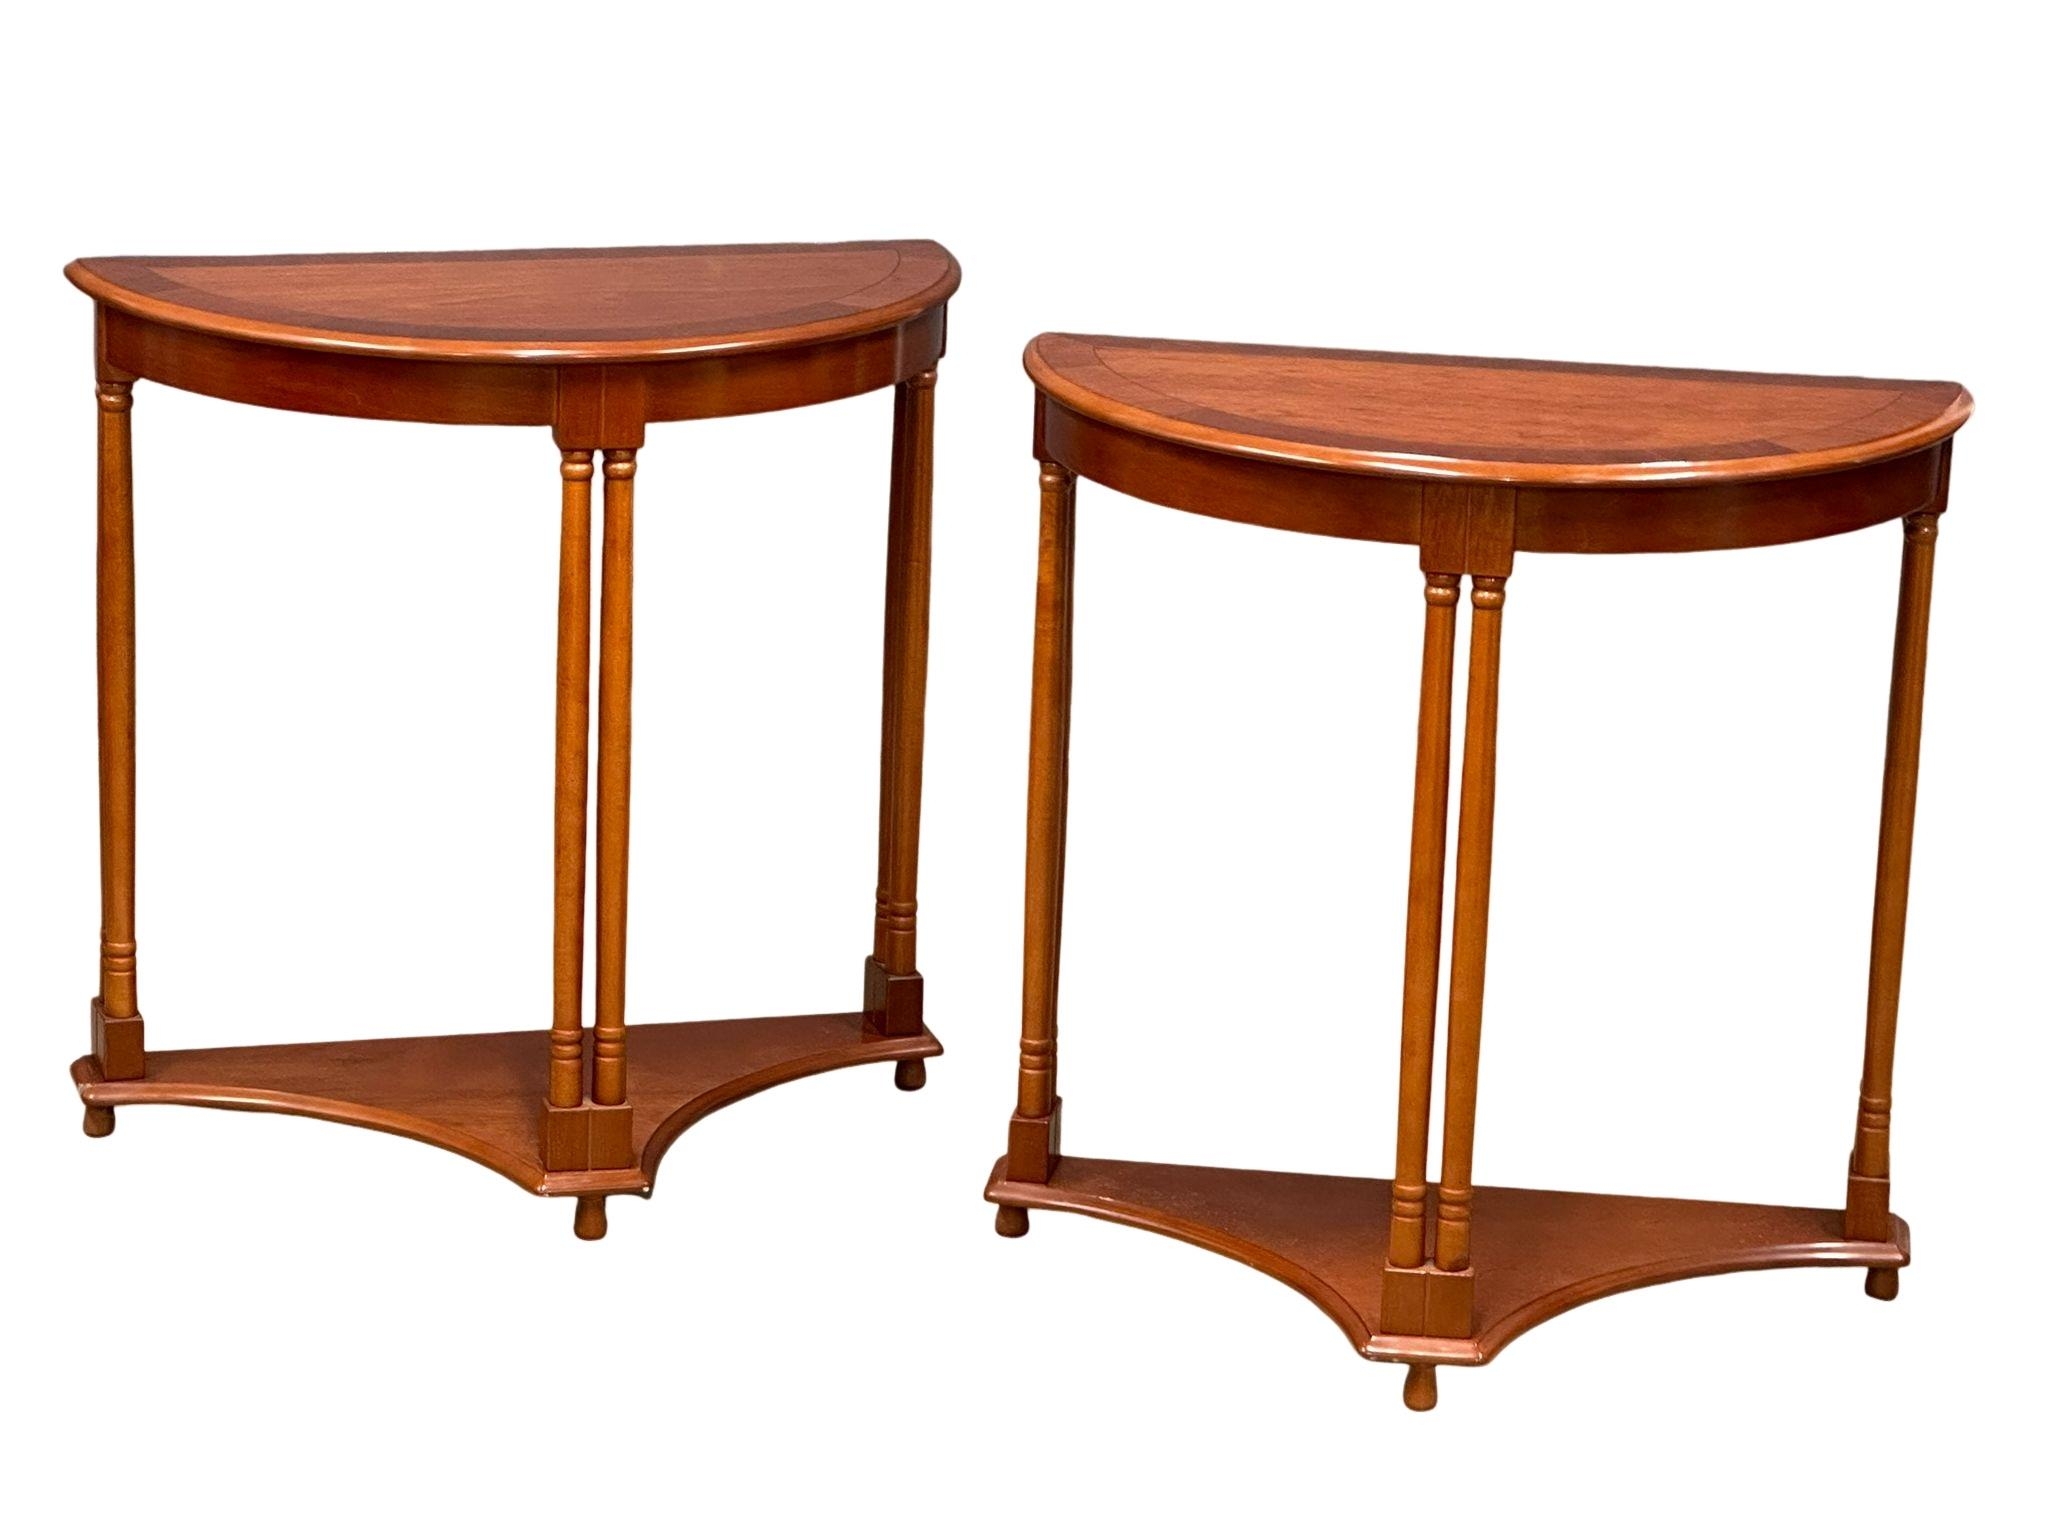 A pair of cherry wood hall tables, 76cm x 38cm x 76cm